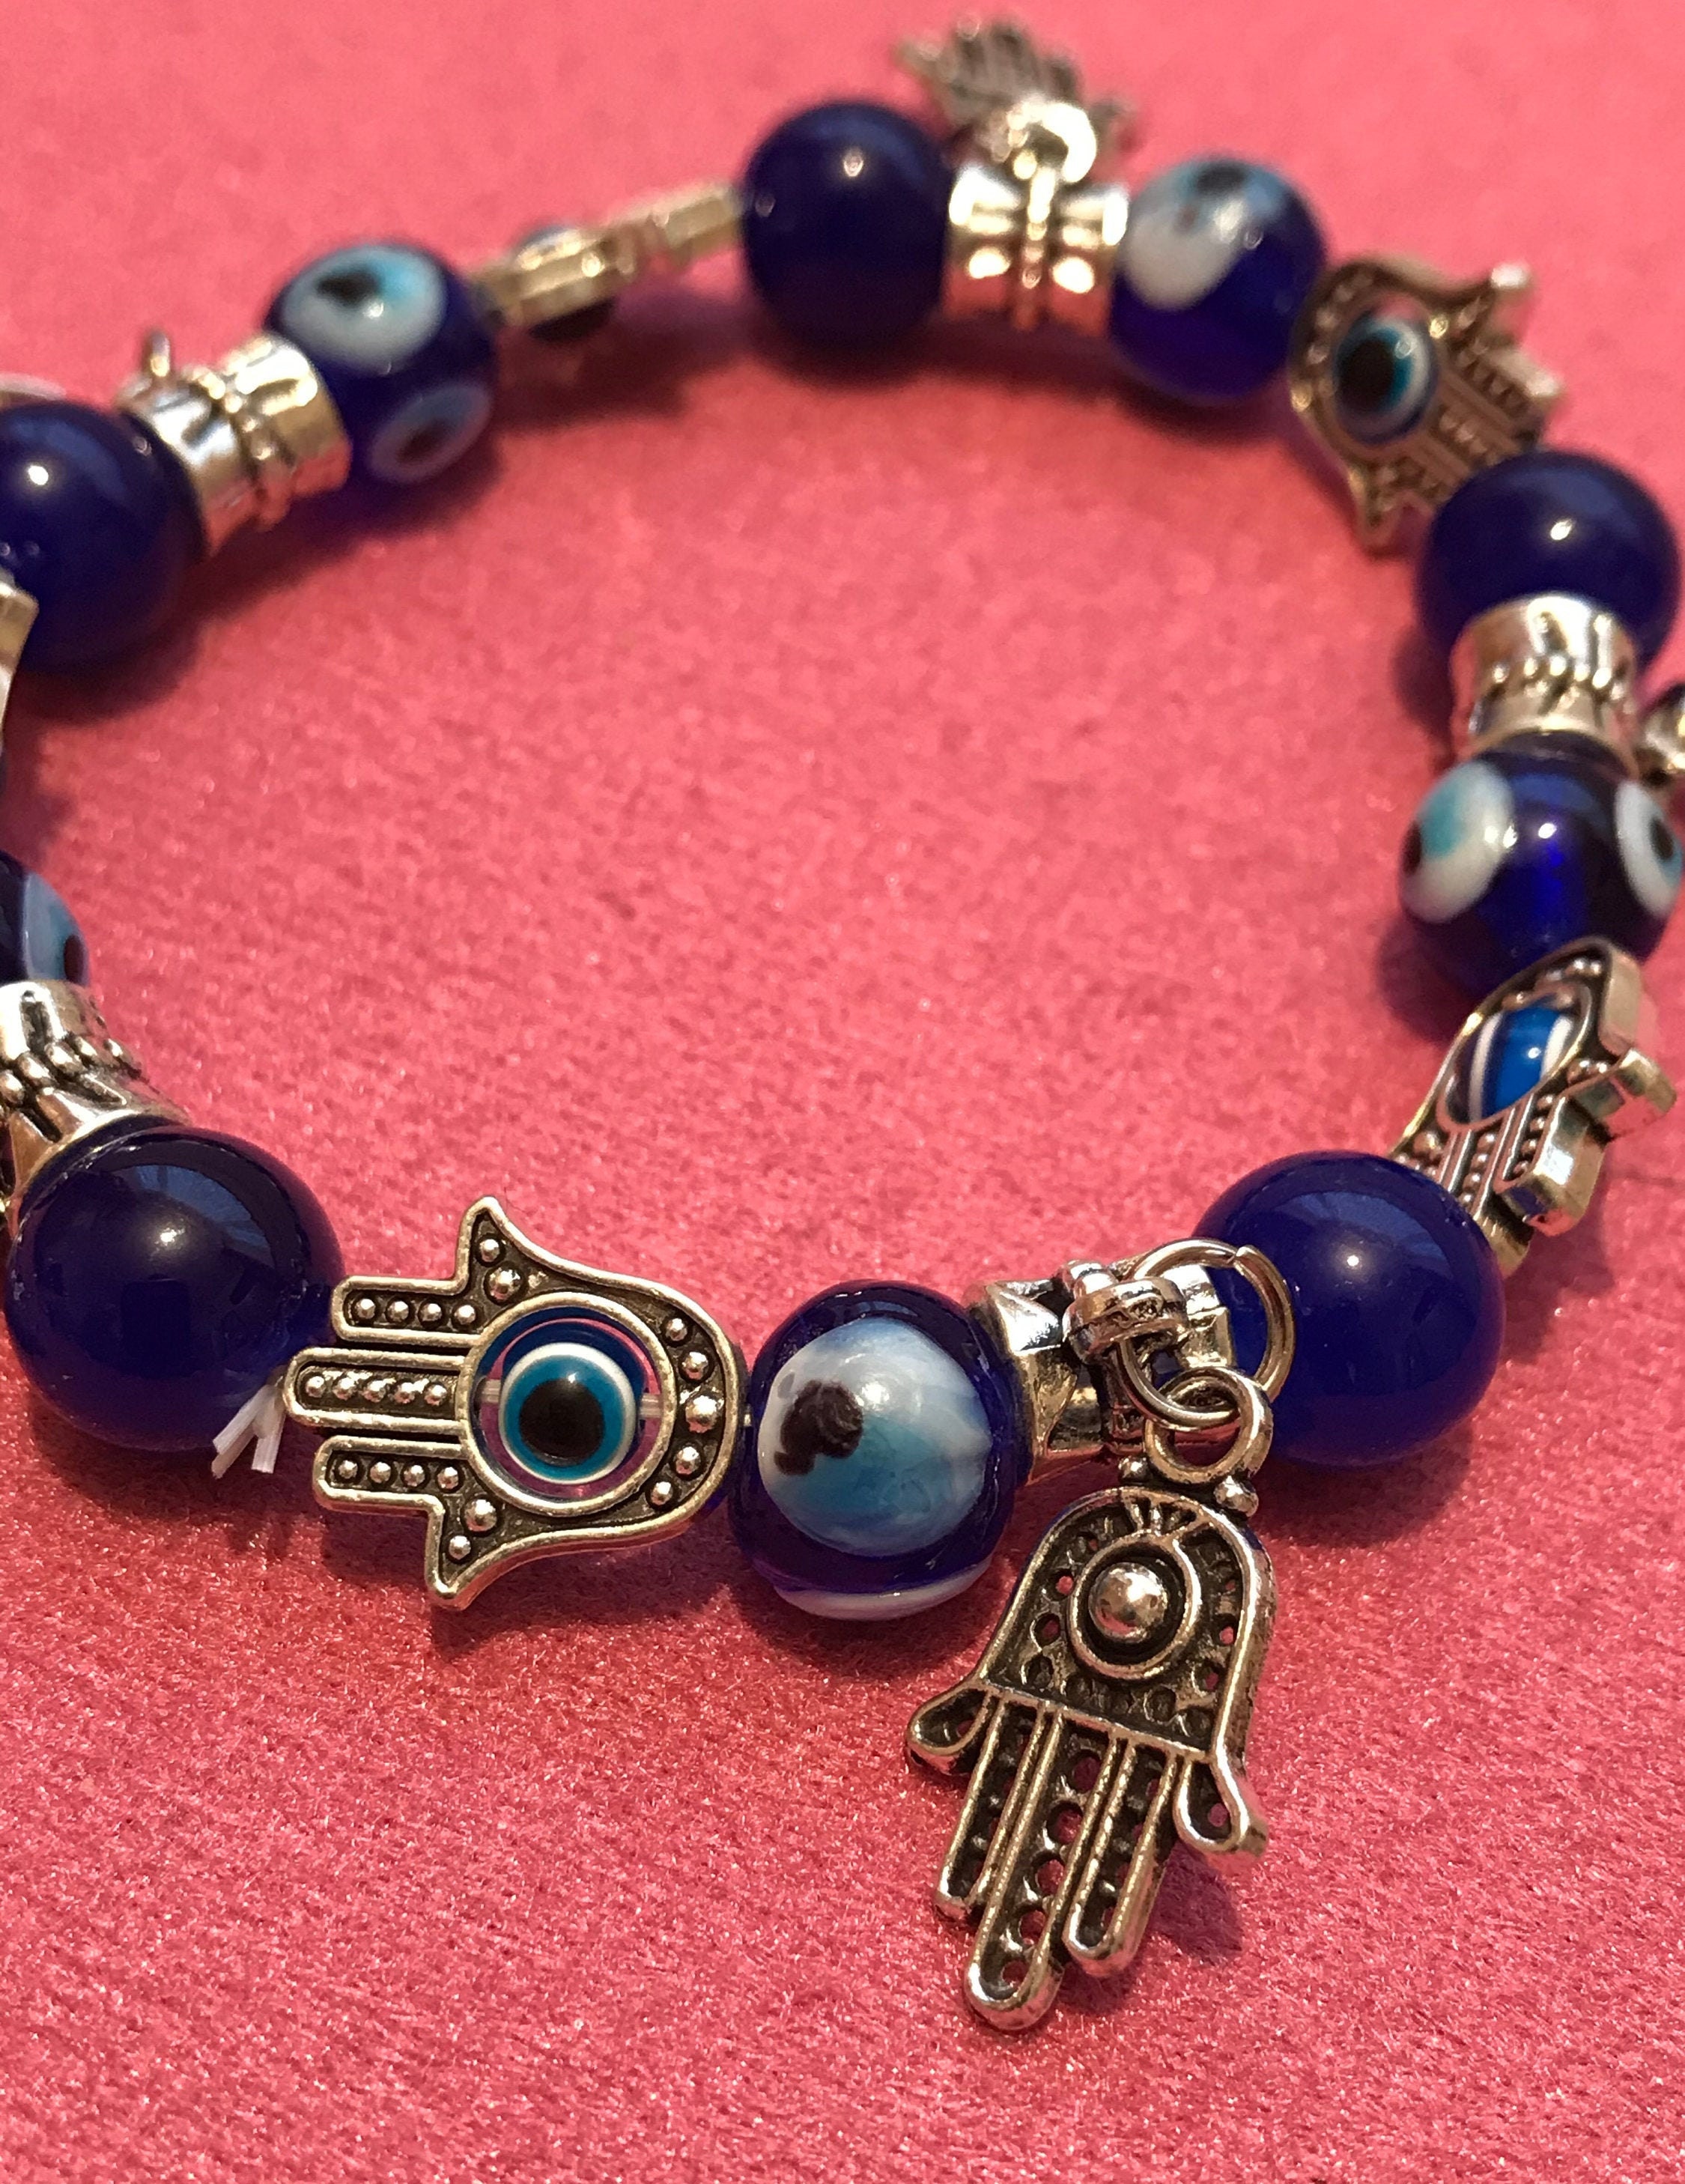 Blue Eye Pendant Friendship Bracelet For Kids Fatima Hand Butterfly Jewelry,  Drop Delivery 2021 By Lulubaby DhrTV From Lulu_baby, $0.78